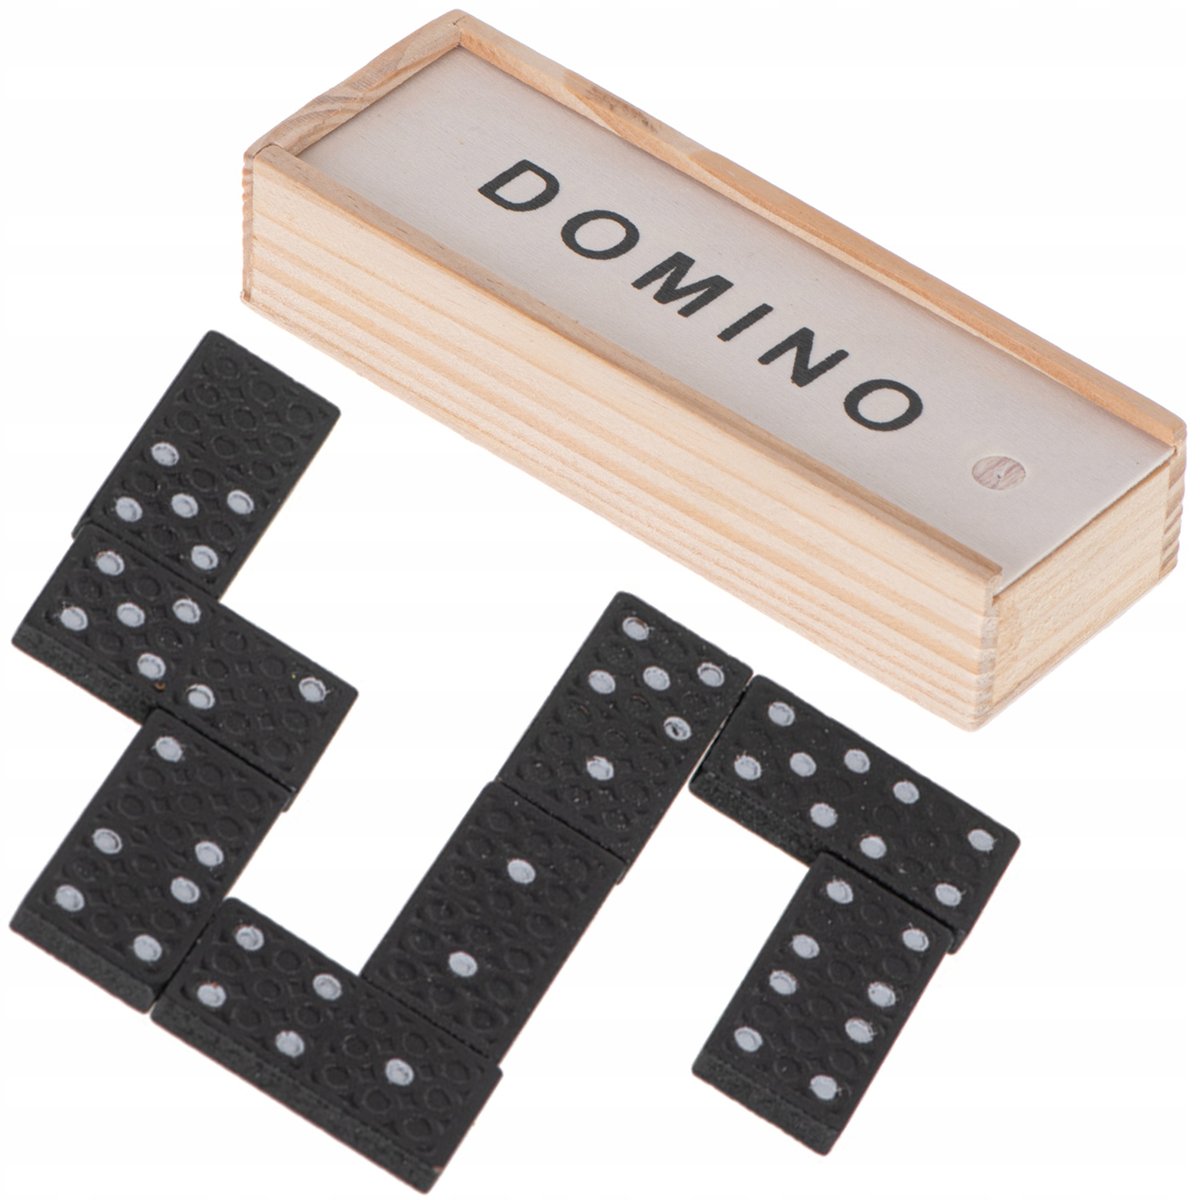 Domino, gra rodzinna